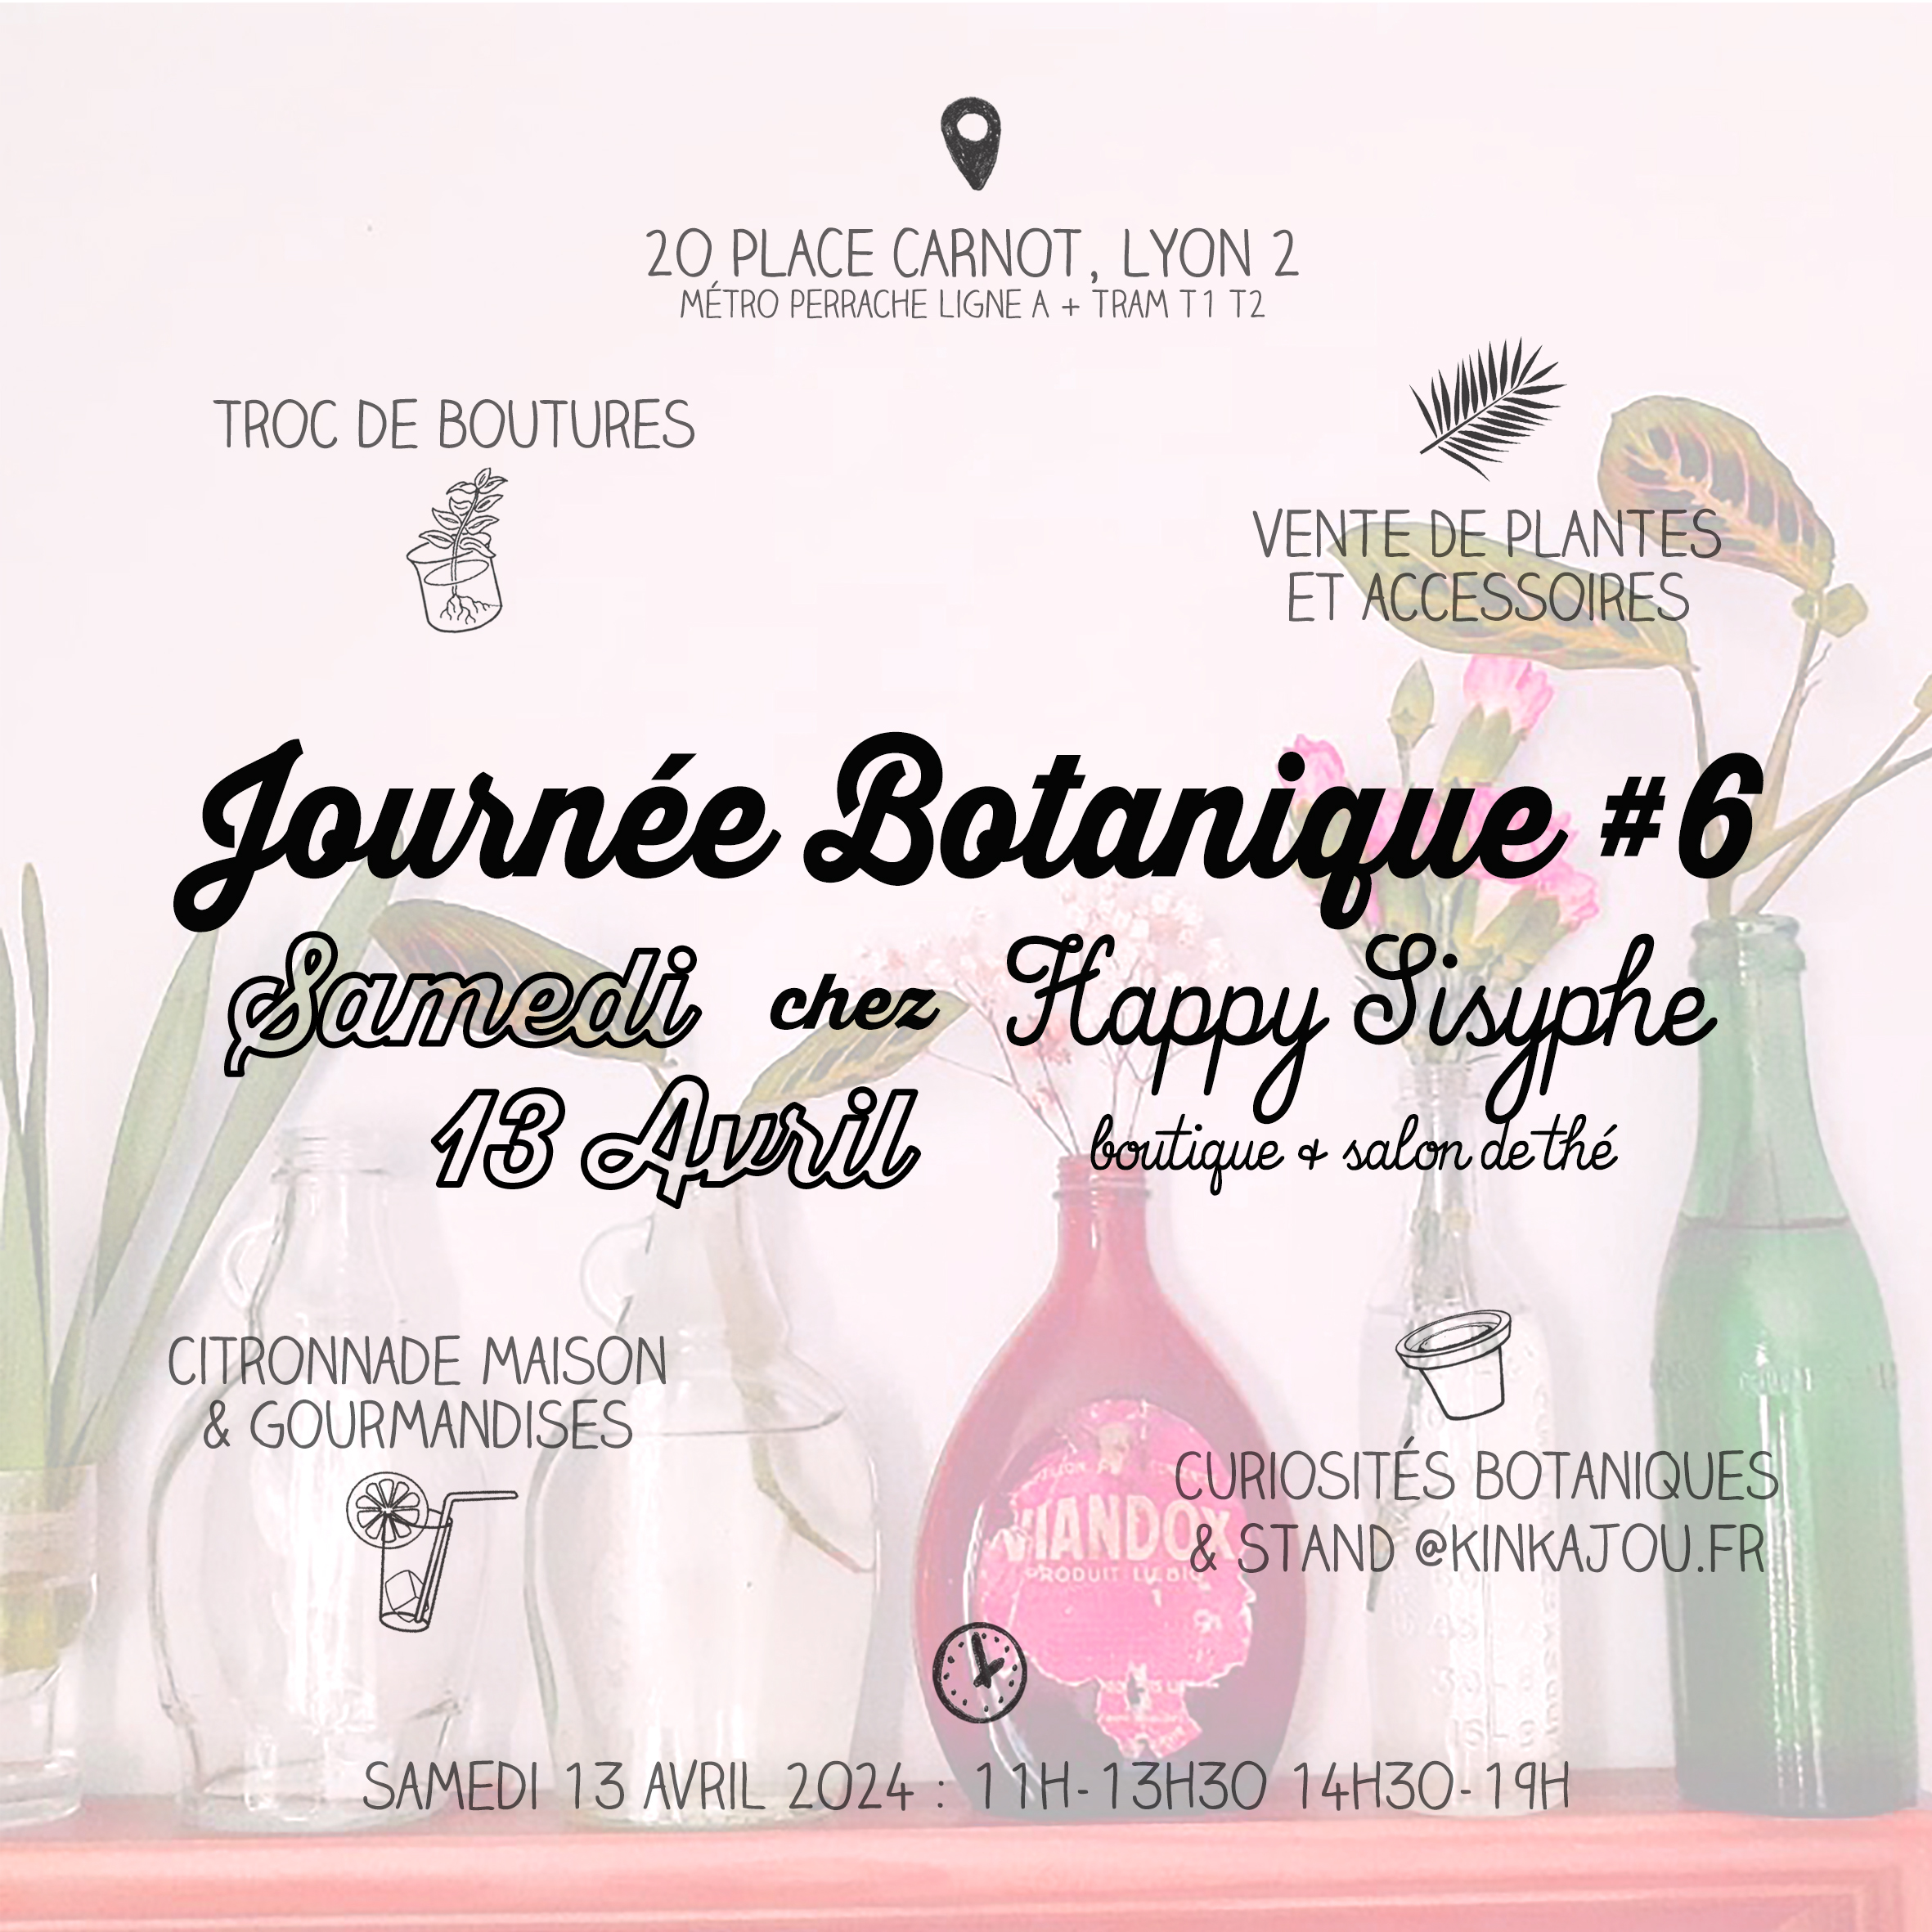 Journée botanique 3 Happy Sisyphe Boutique Lyon Evenement Plante bulbe caladium limonade troc de boutures lyon plantes collection stand fruits legumes ceramiques